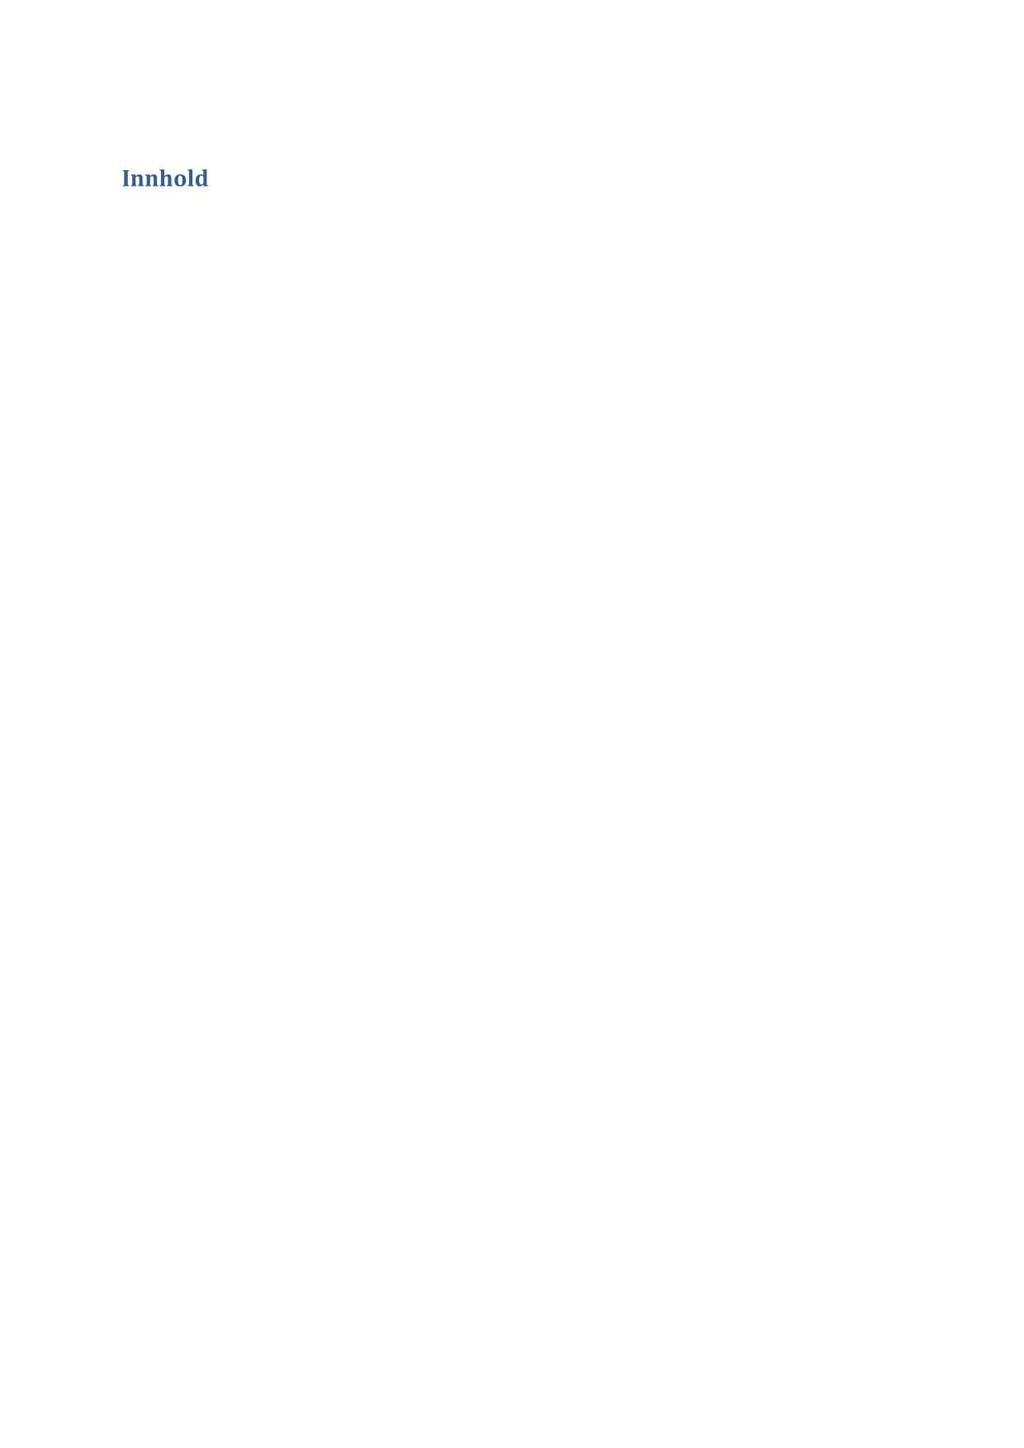 Innhold 1. Oversikt lover og forskrifter...... 4 2. Målsetninger og planer......... 5 2.2. Plan for forebygging og bekjempelse av lakselus og resistente lusepopulasjoner Seløy Sjøfarm AS 2015-2016.